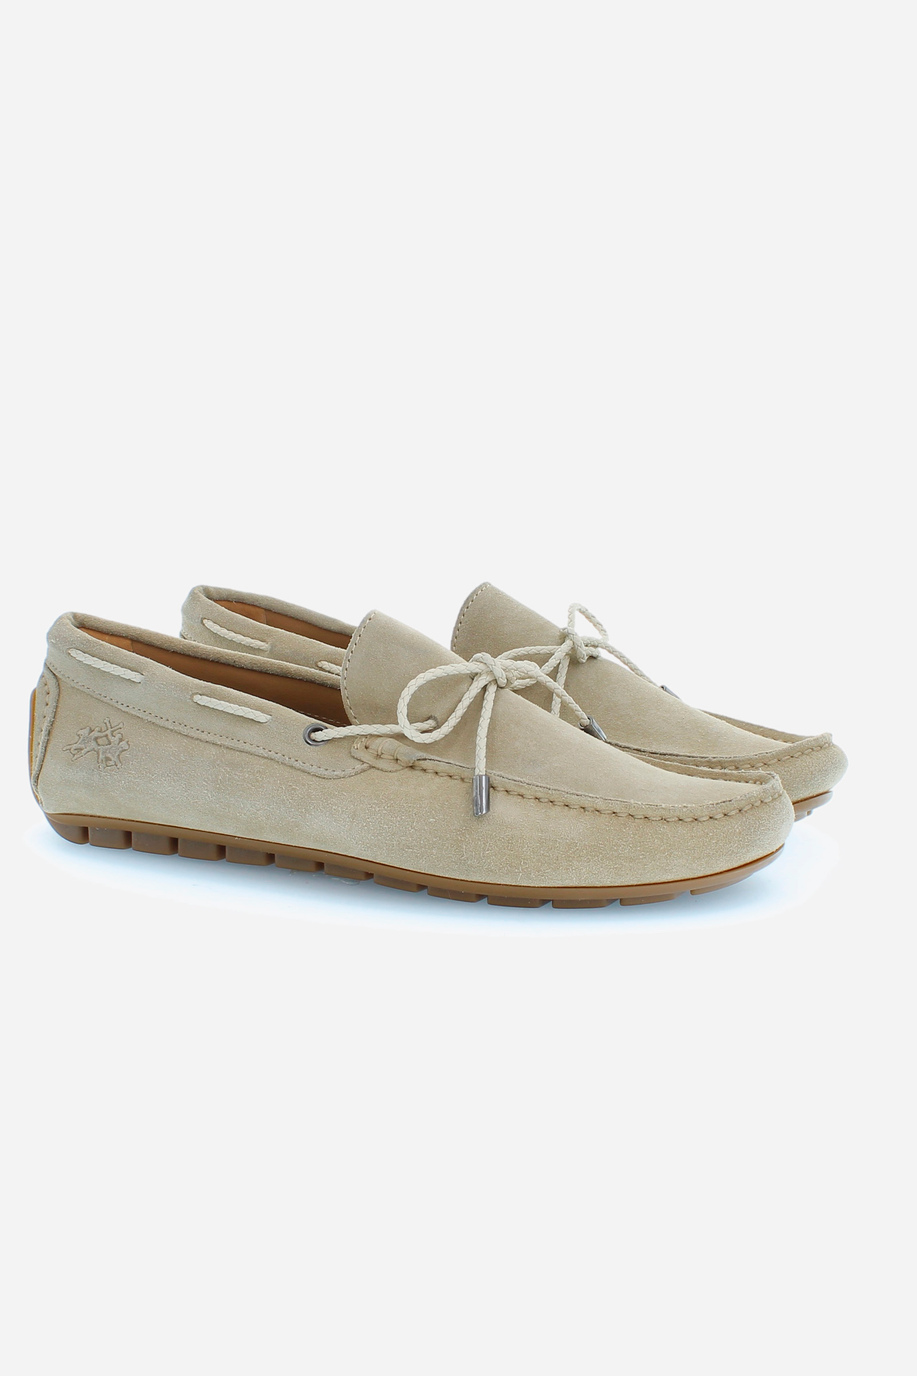 Men's suede loafers with laces - Man shoes | La Martina - Official Online Shop